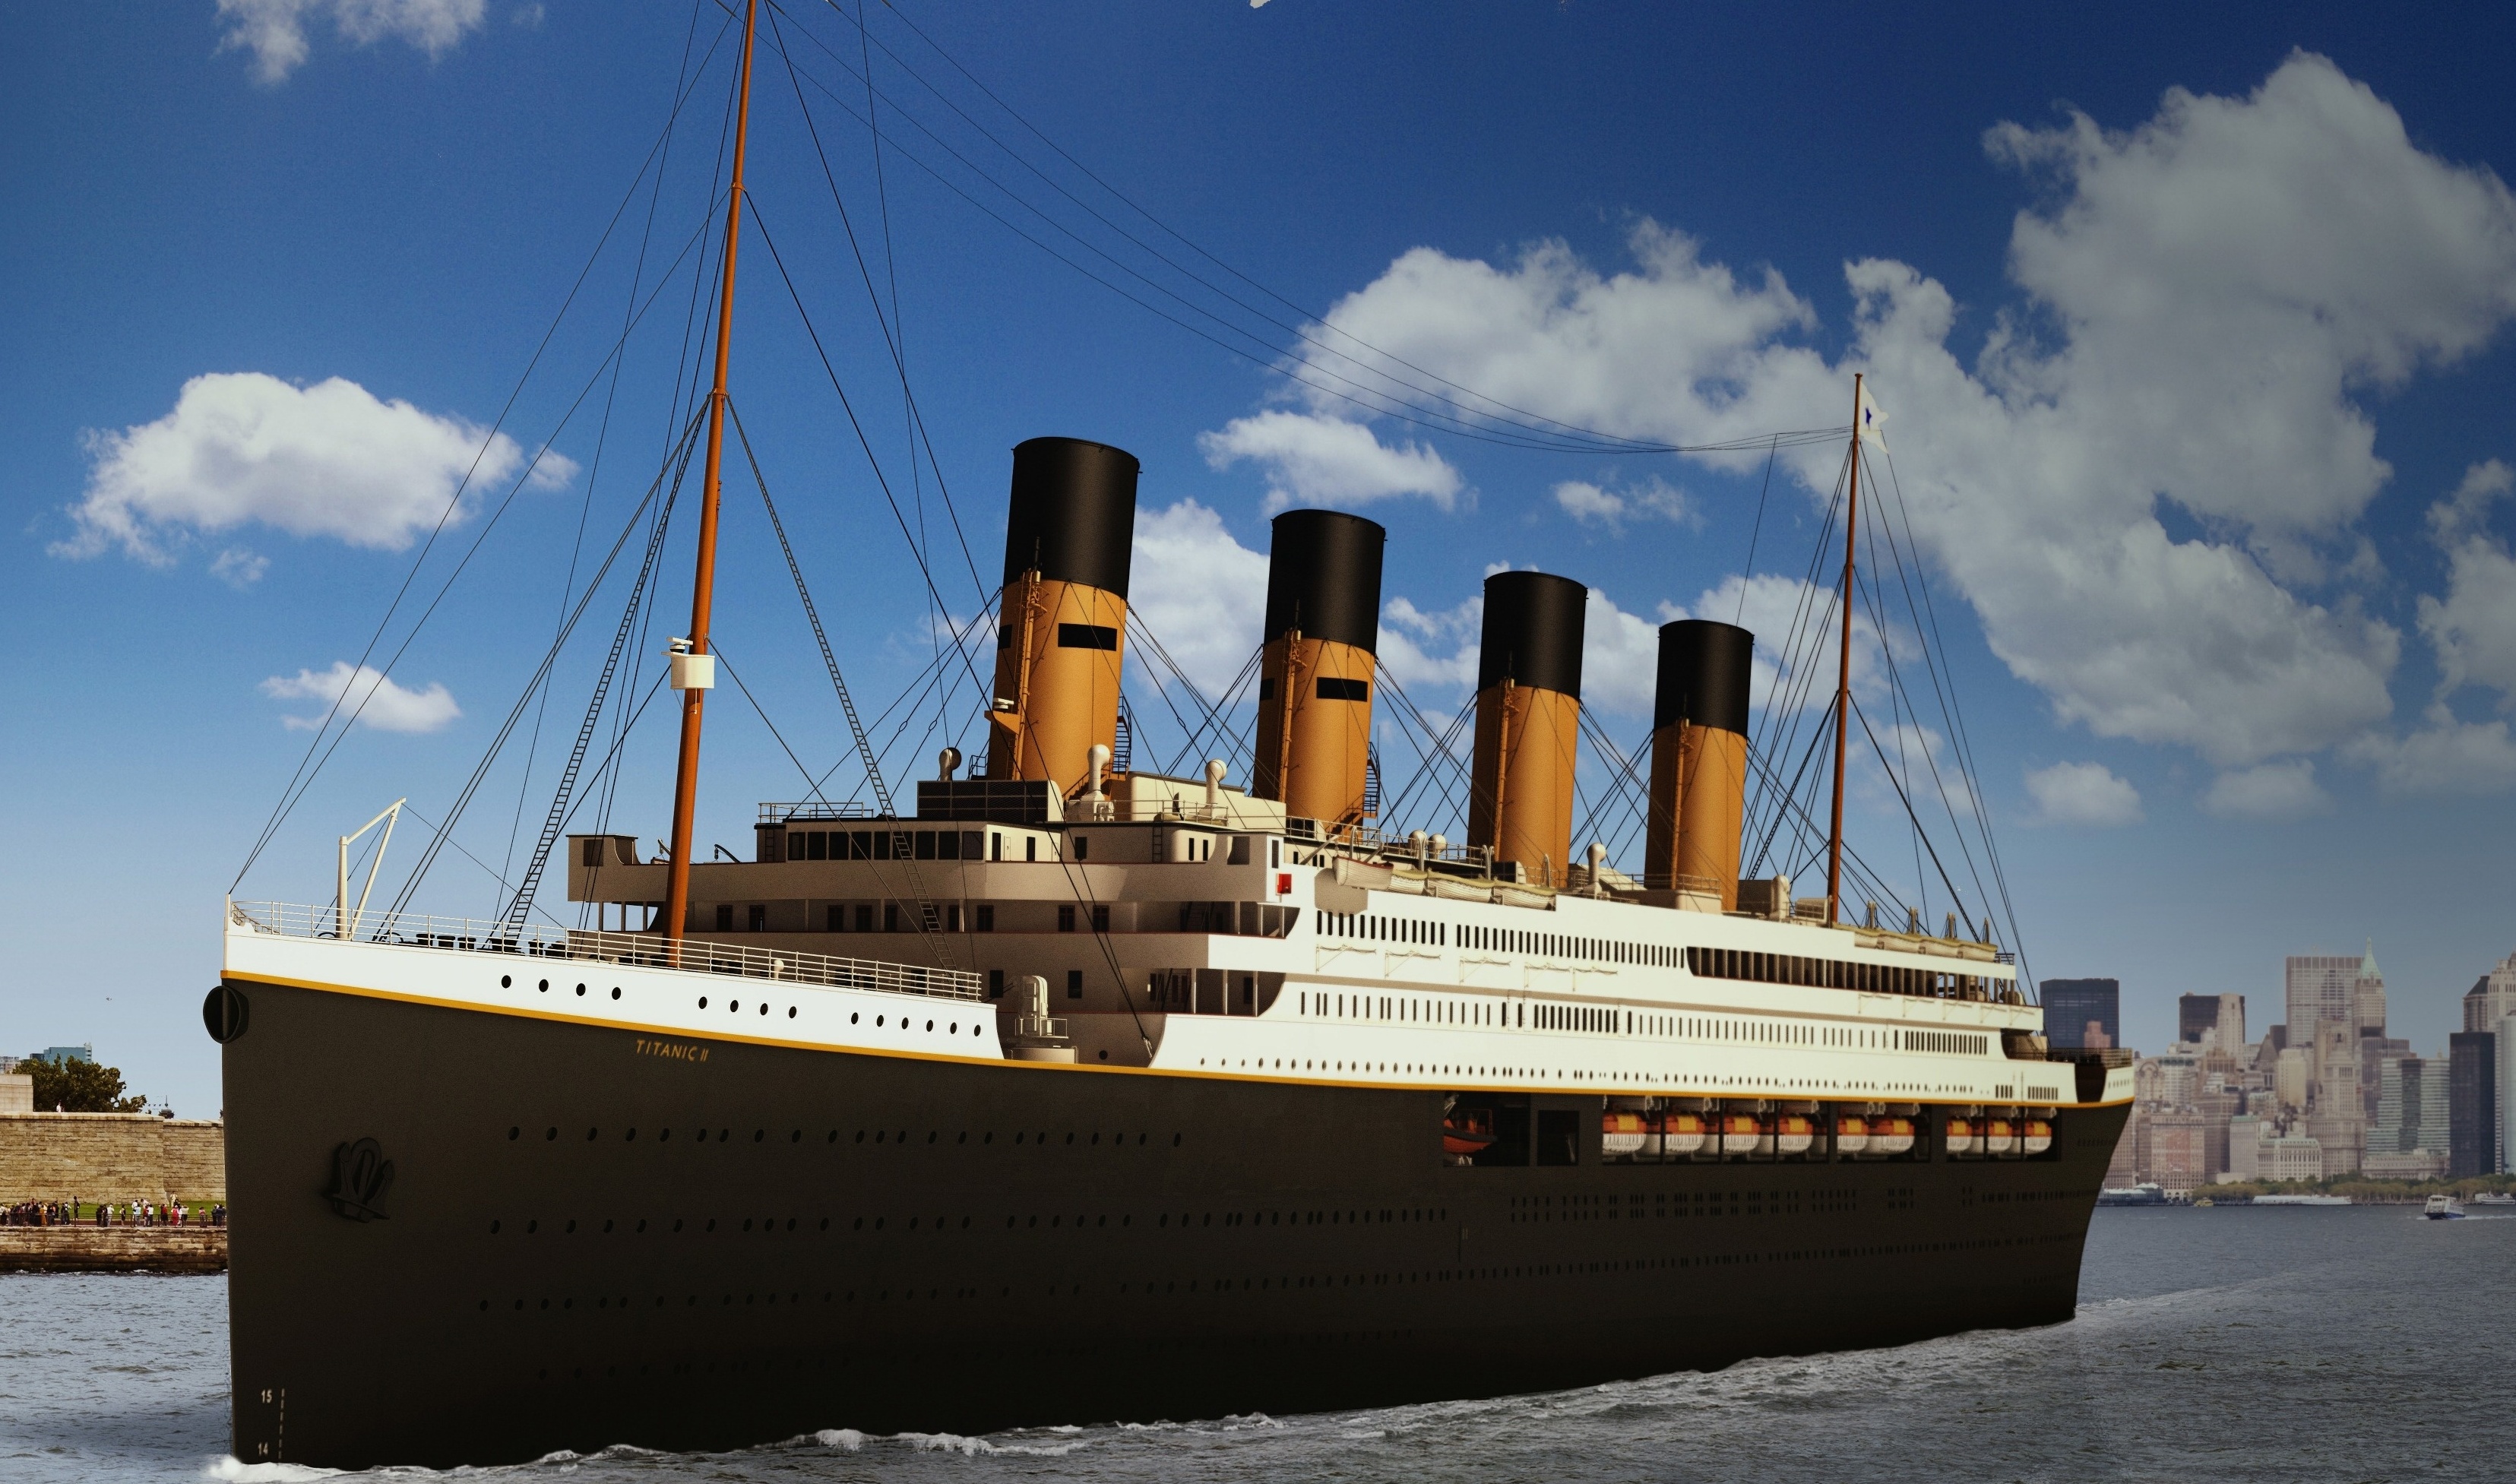 Ota selvää 30+ imagen titanic ii wiki